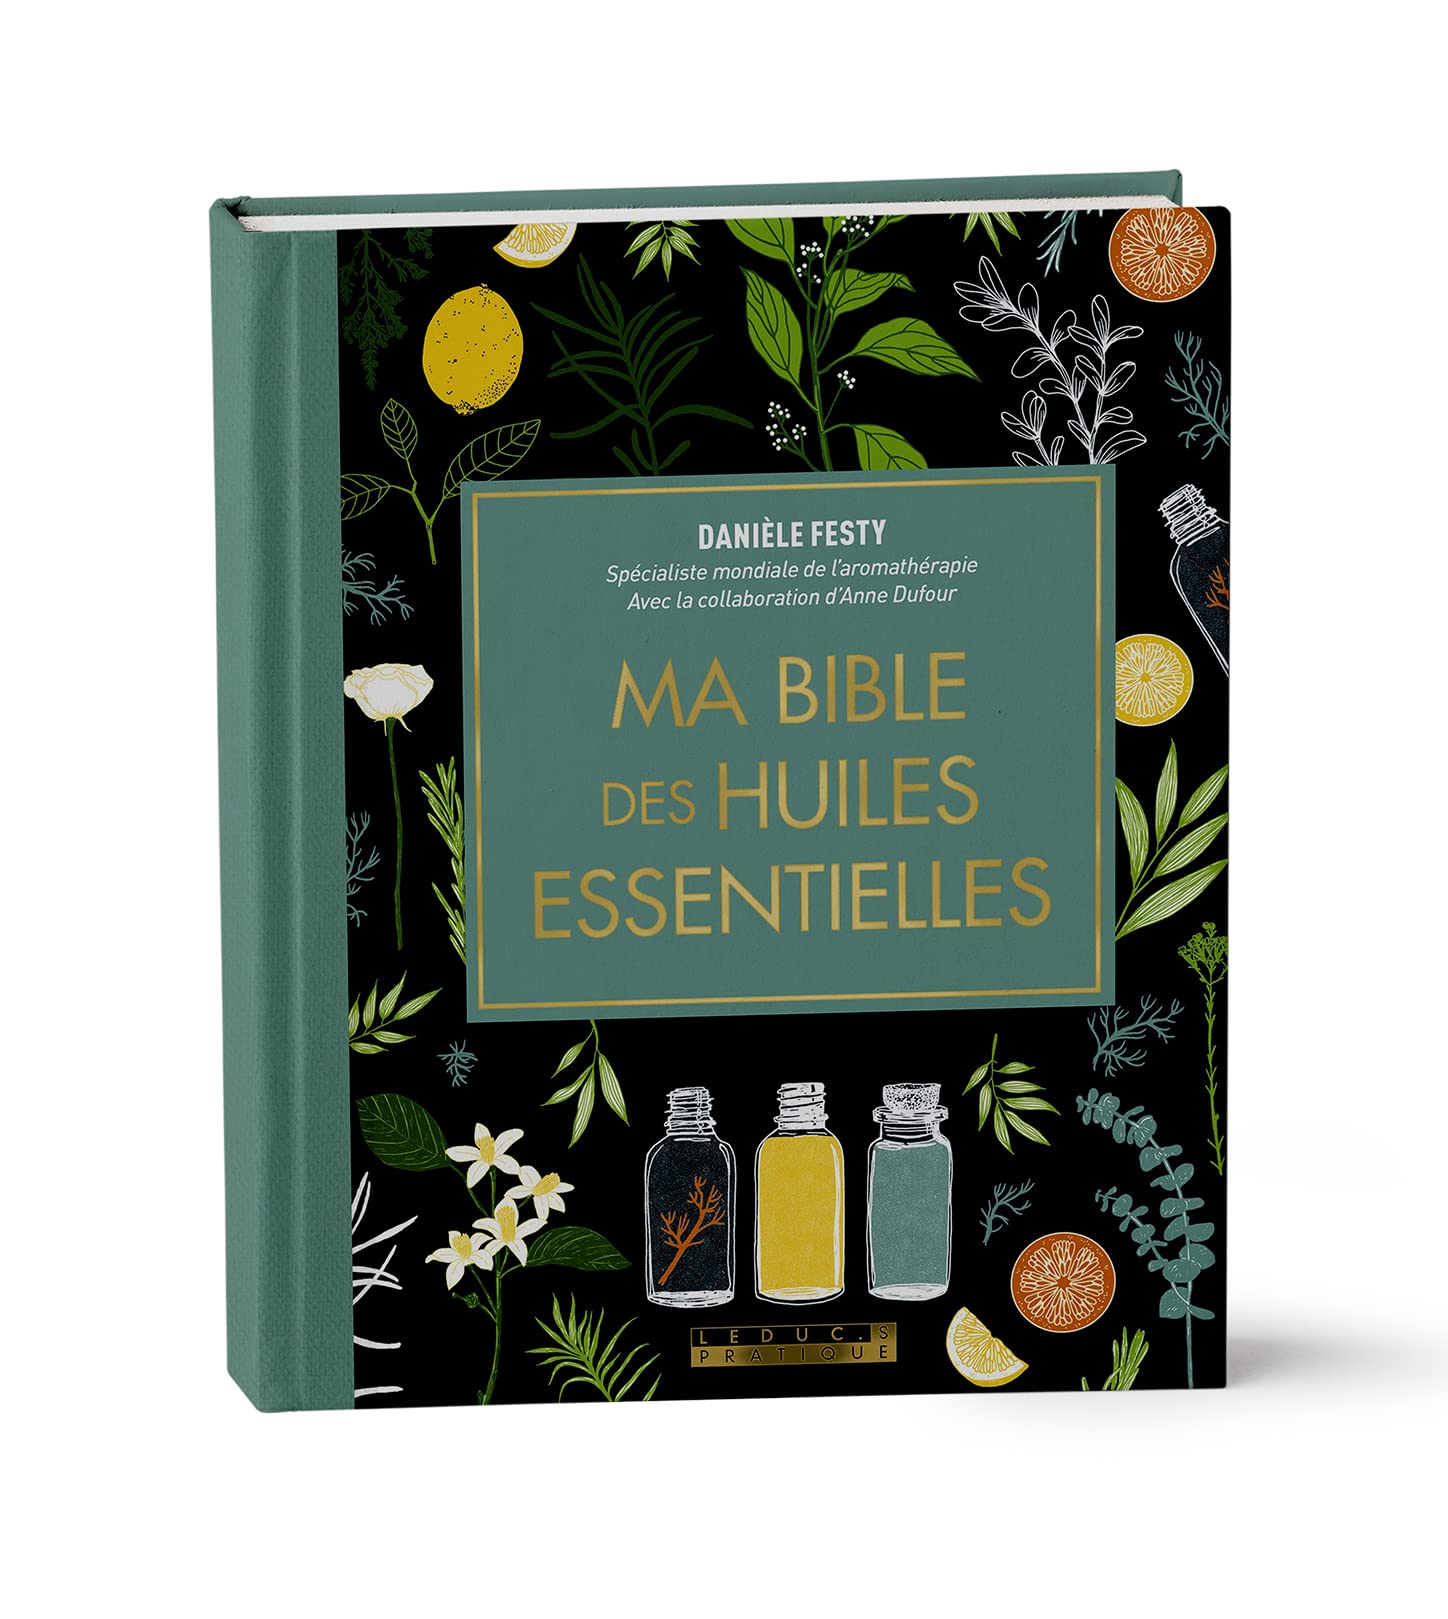 Ma bible des huiles essentielles édition de luxe: L'édition enrichie du livre de référence, illustrée et 100% en couleurs